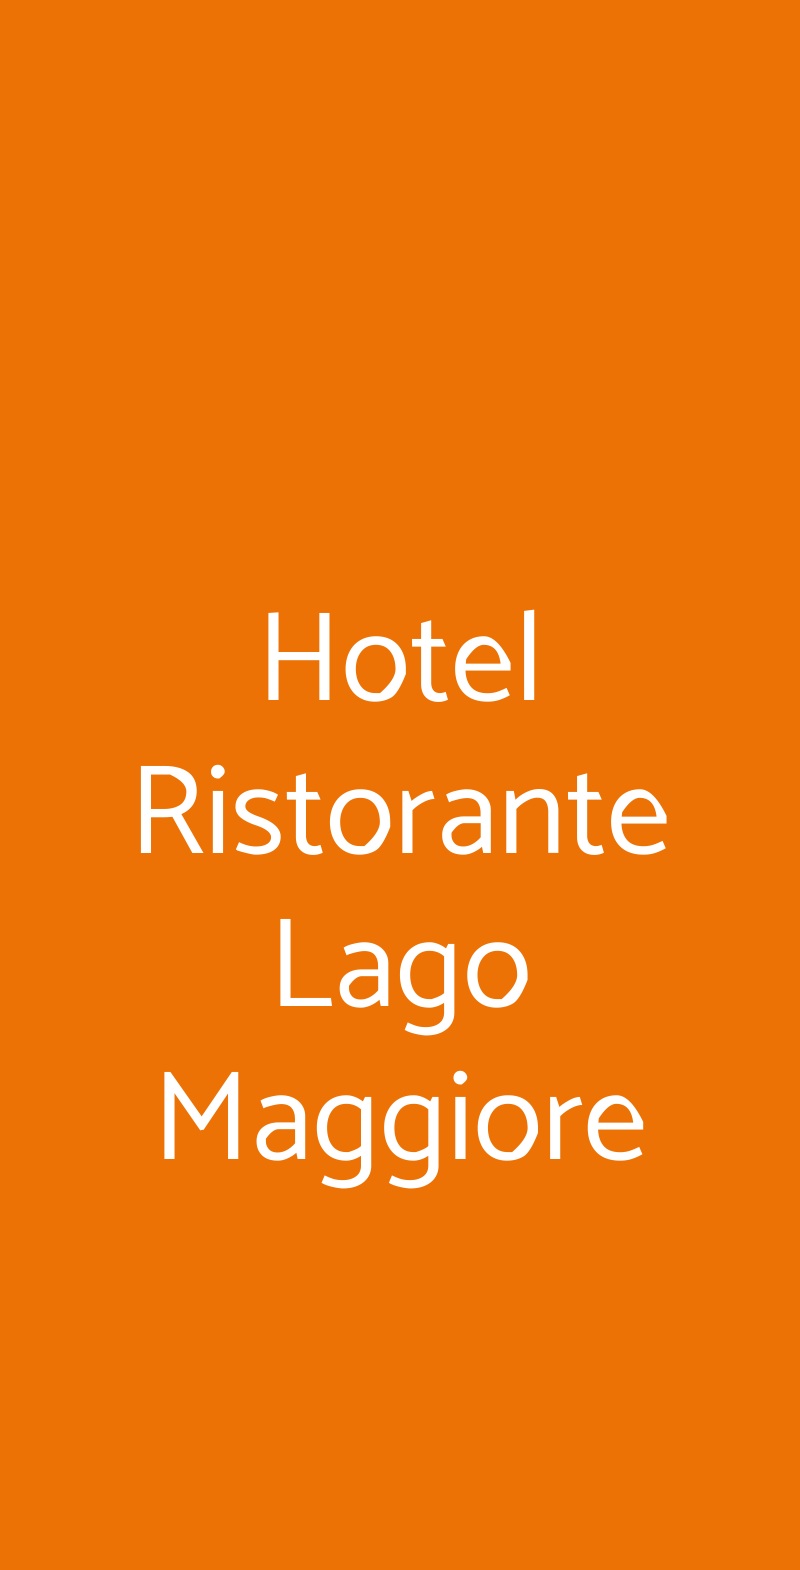 Hotel Ristorante Lago Maggiore Lesa menù 1 pagina